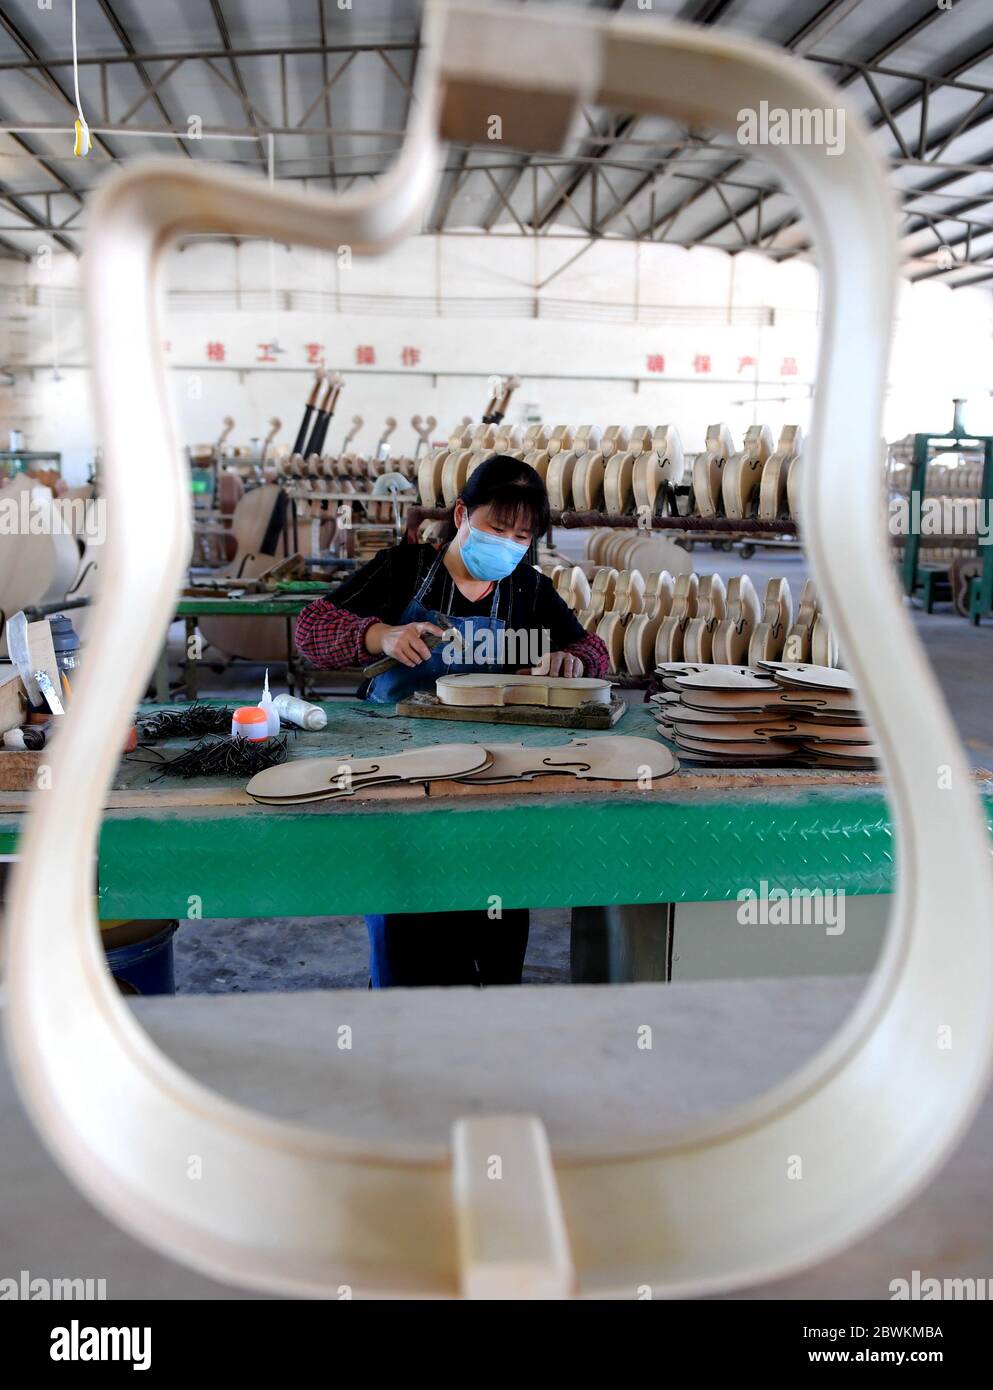 Hengshui, Chinas Provinz Hebei. Juni 2020. Ein Arbeiter montiert Musikinstrumente in einer Musikinstrumentenfabrik im Wuqiang Bezirk von Hengshui, Nordchinesische Provinz Hebei, 2. Juni 2020. Die Behörden im Wuqiang County haben eine Initiative zur Armutsbekämpfung durchgeführt, die die lokale Musikinstrumentenindustrie dazu ermutigt, ländliche Bewohner, die unterhalb der aktuellen Armutsgrenze leben, einzustellen und ihnen dabei zu helfen, neue Karrieren zu beginnen. Kredit: Zhu Xudong/Xinhua/Alamy Live News Stockfoto